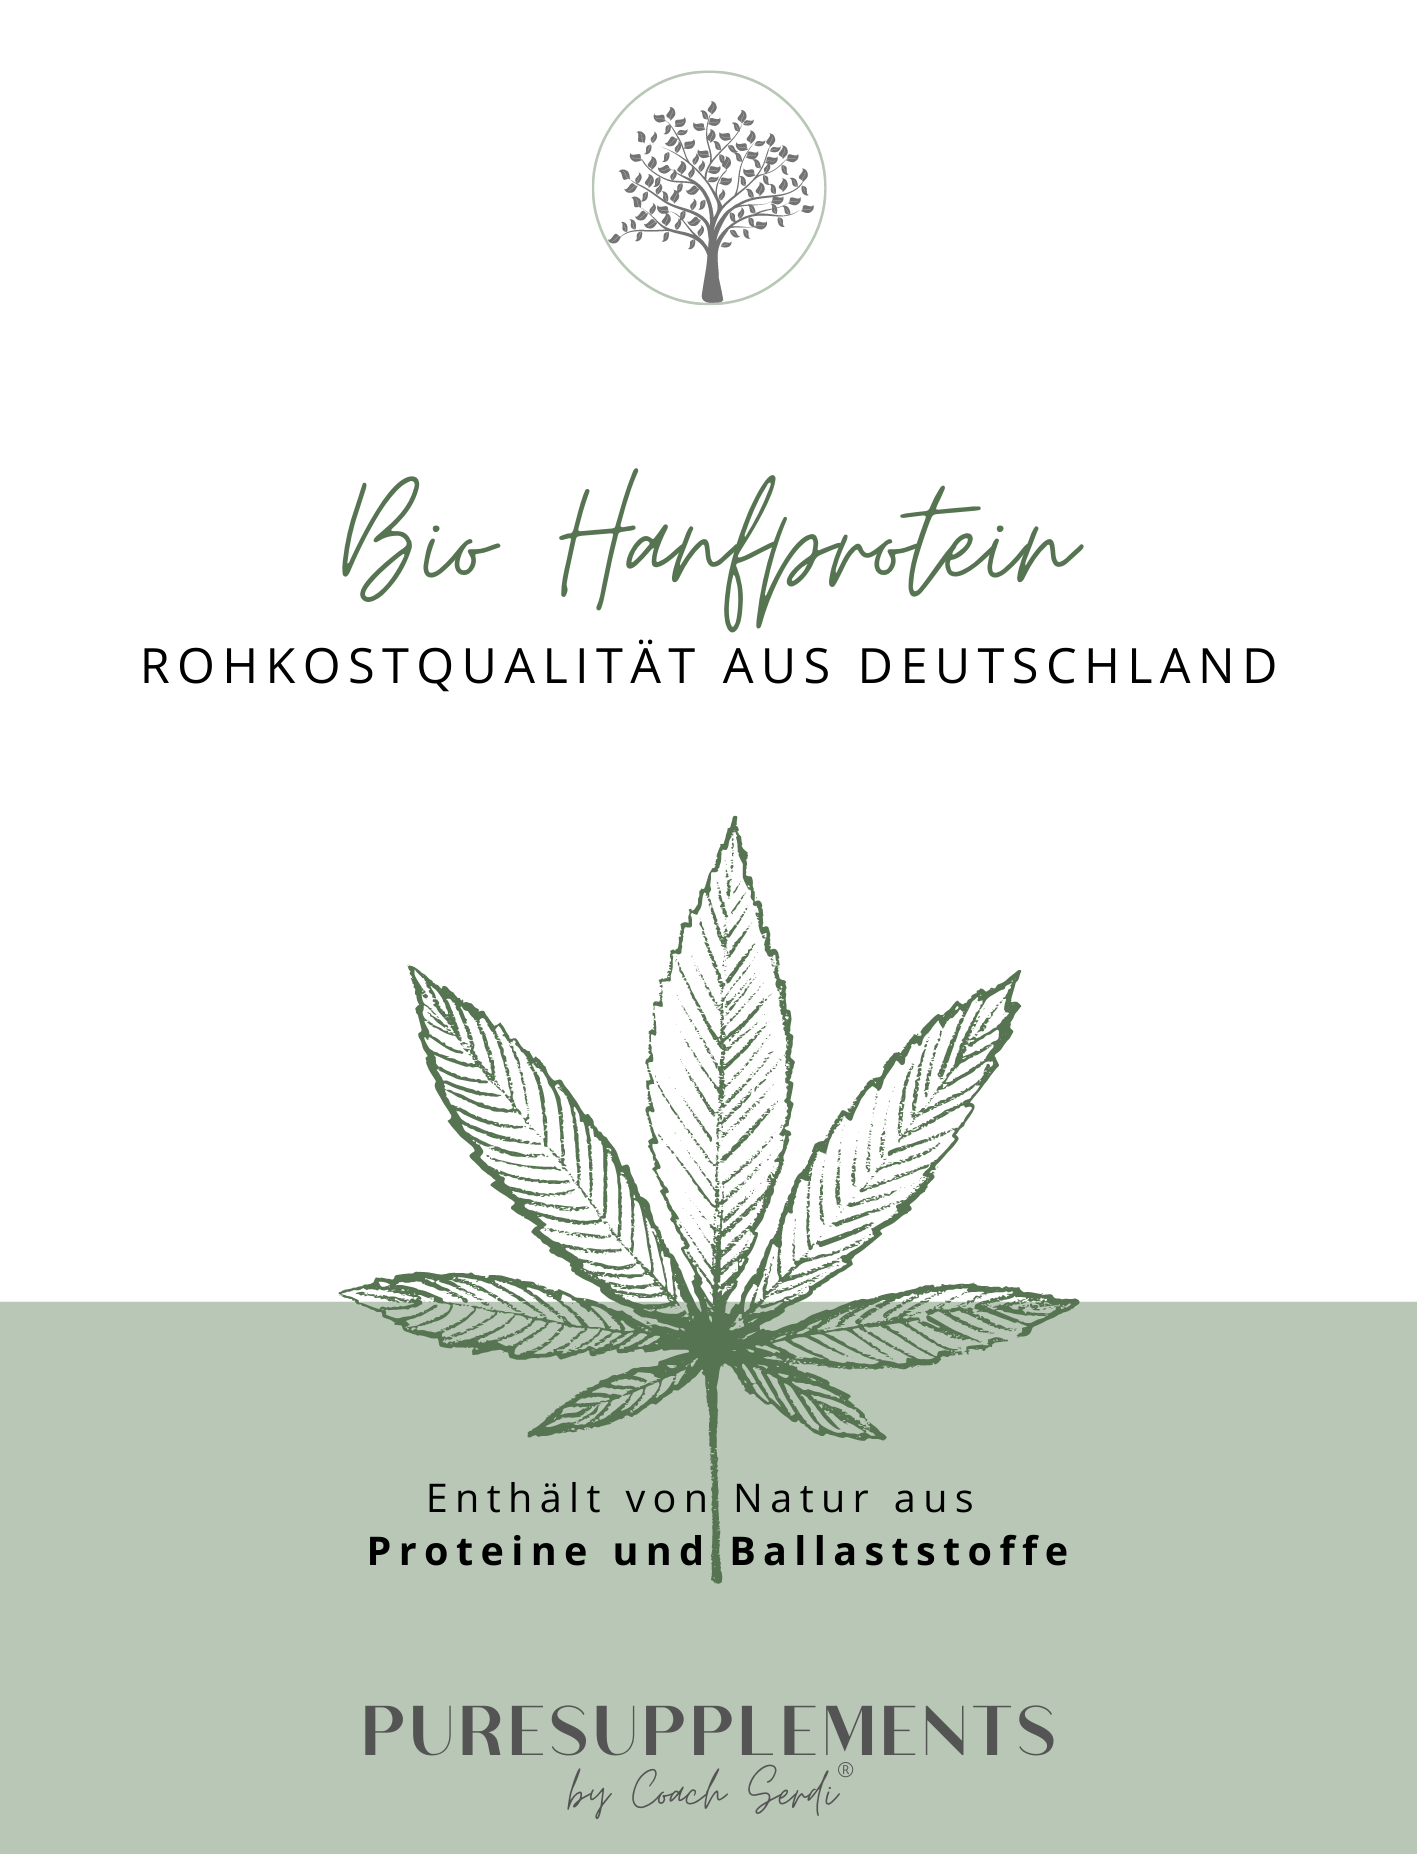 Premium Bio Hanfprotein 1KG aus Spitzenanbau Deutschland (Rohkost-Vegan)